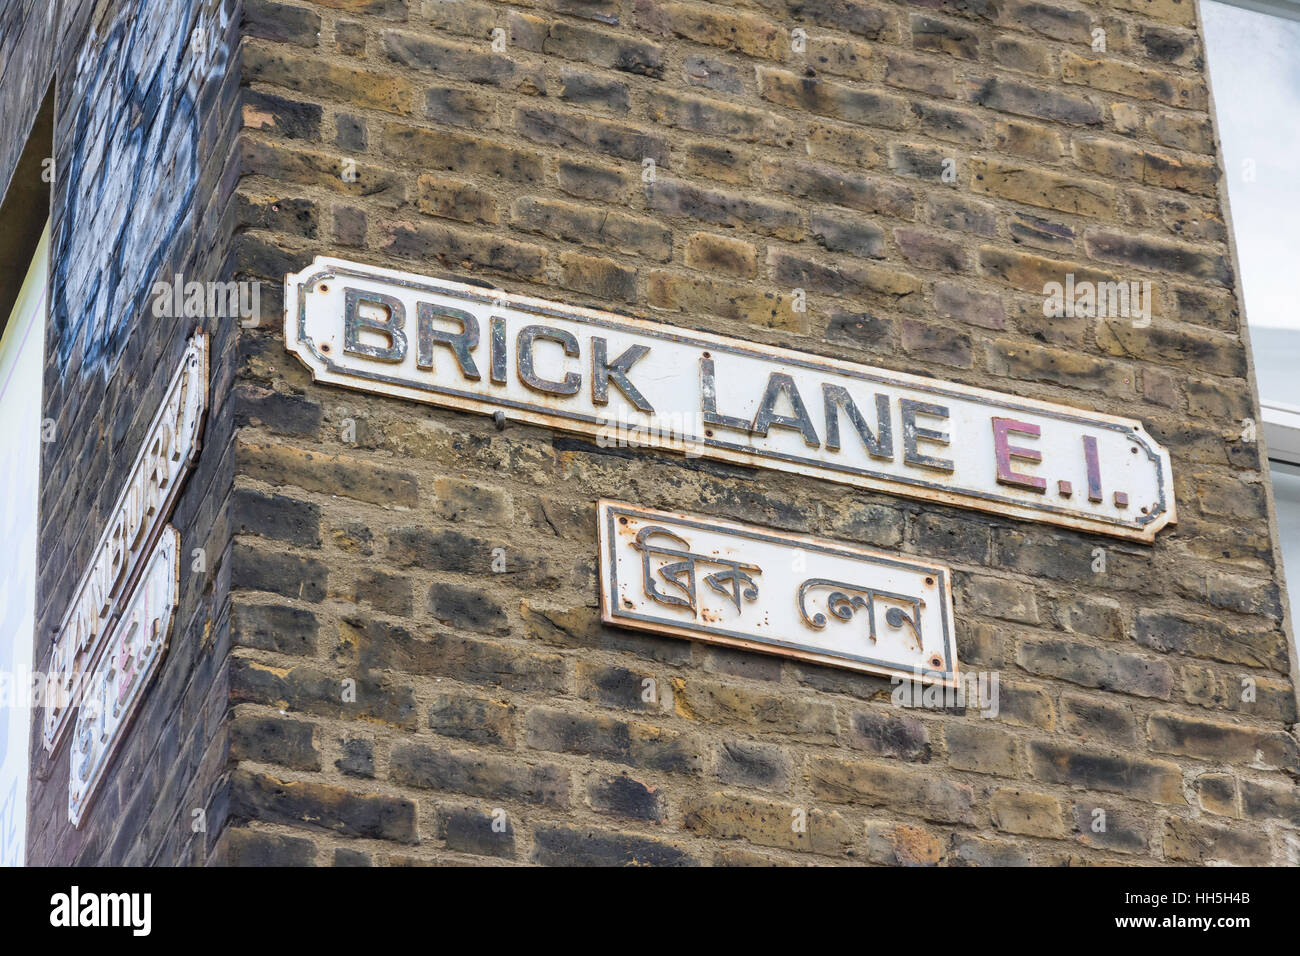 Brick Lane strada segno, Spitalfields, London Borough of Tower Hamlets, Greater London, England, Regno Unito Foto Stock